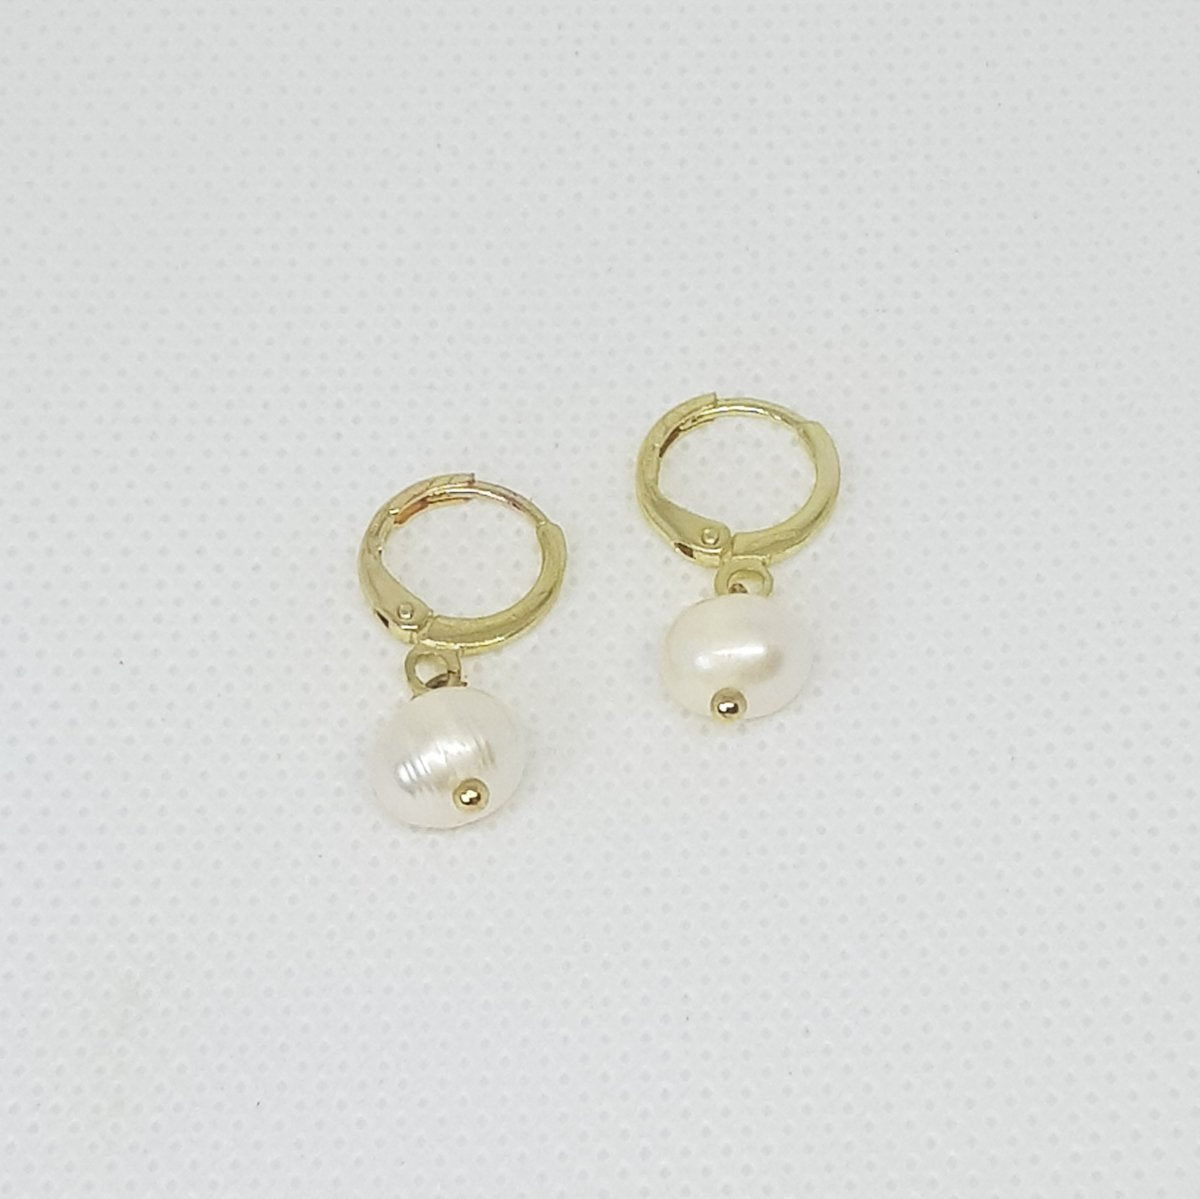 Small Pearl Hoop Earrings - MCA Design by Maria